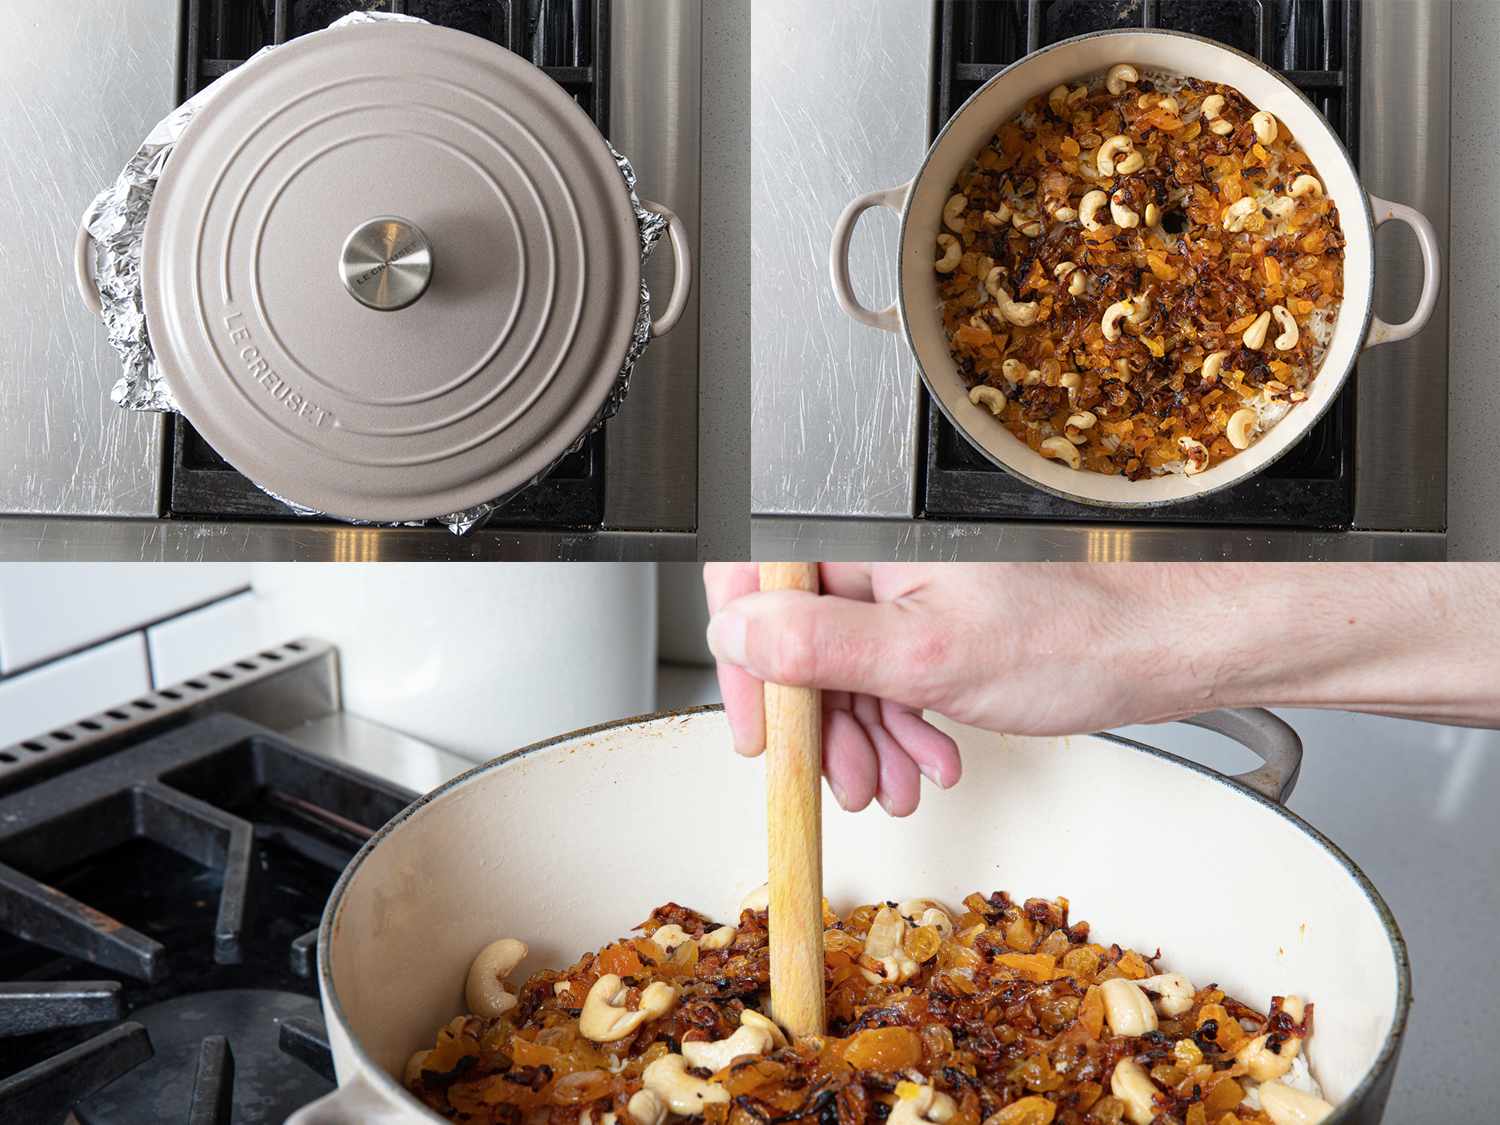 三幅图像拼贴。左上:荷兰烤箱覆盖箔和盖子。右上:印度香饭，中间有洞。下图:一只手将木勺柄插入印度香饭中